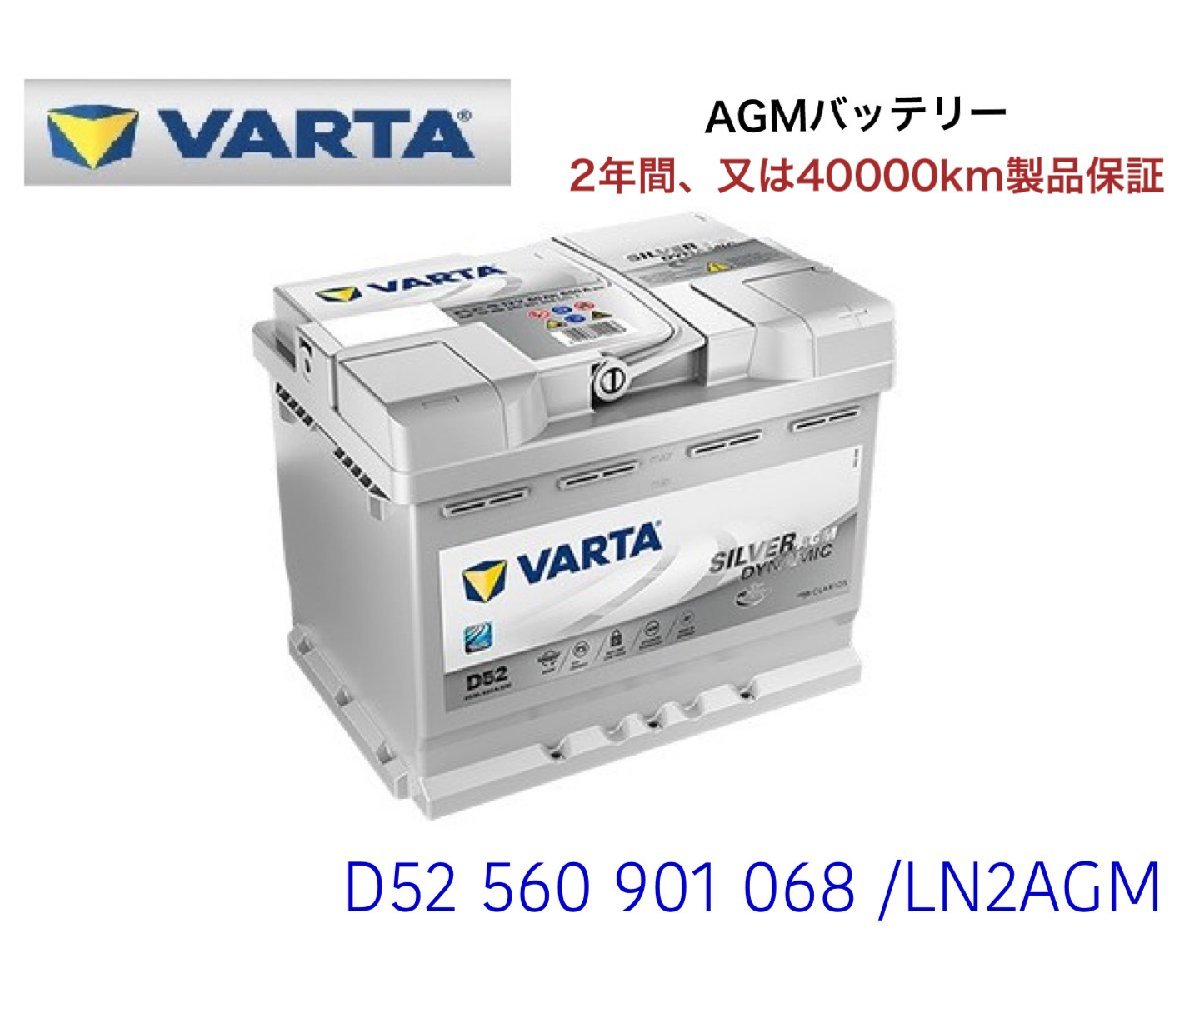 フィアット 500X 334 高性能 AGM バッテリー SilverDynamic AGM VARTA バルタ LN2AGM D52 560901068 680A/60Ah_画像1